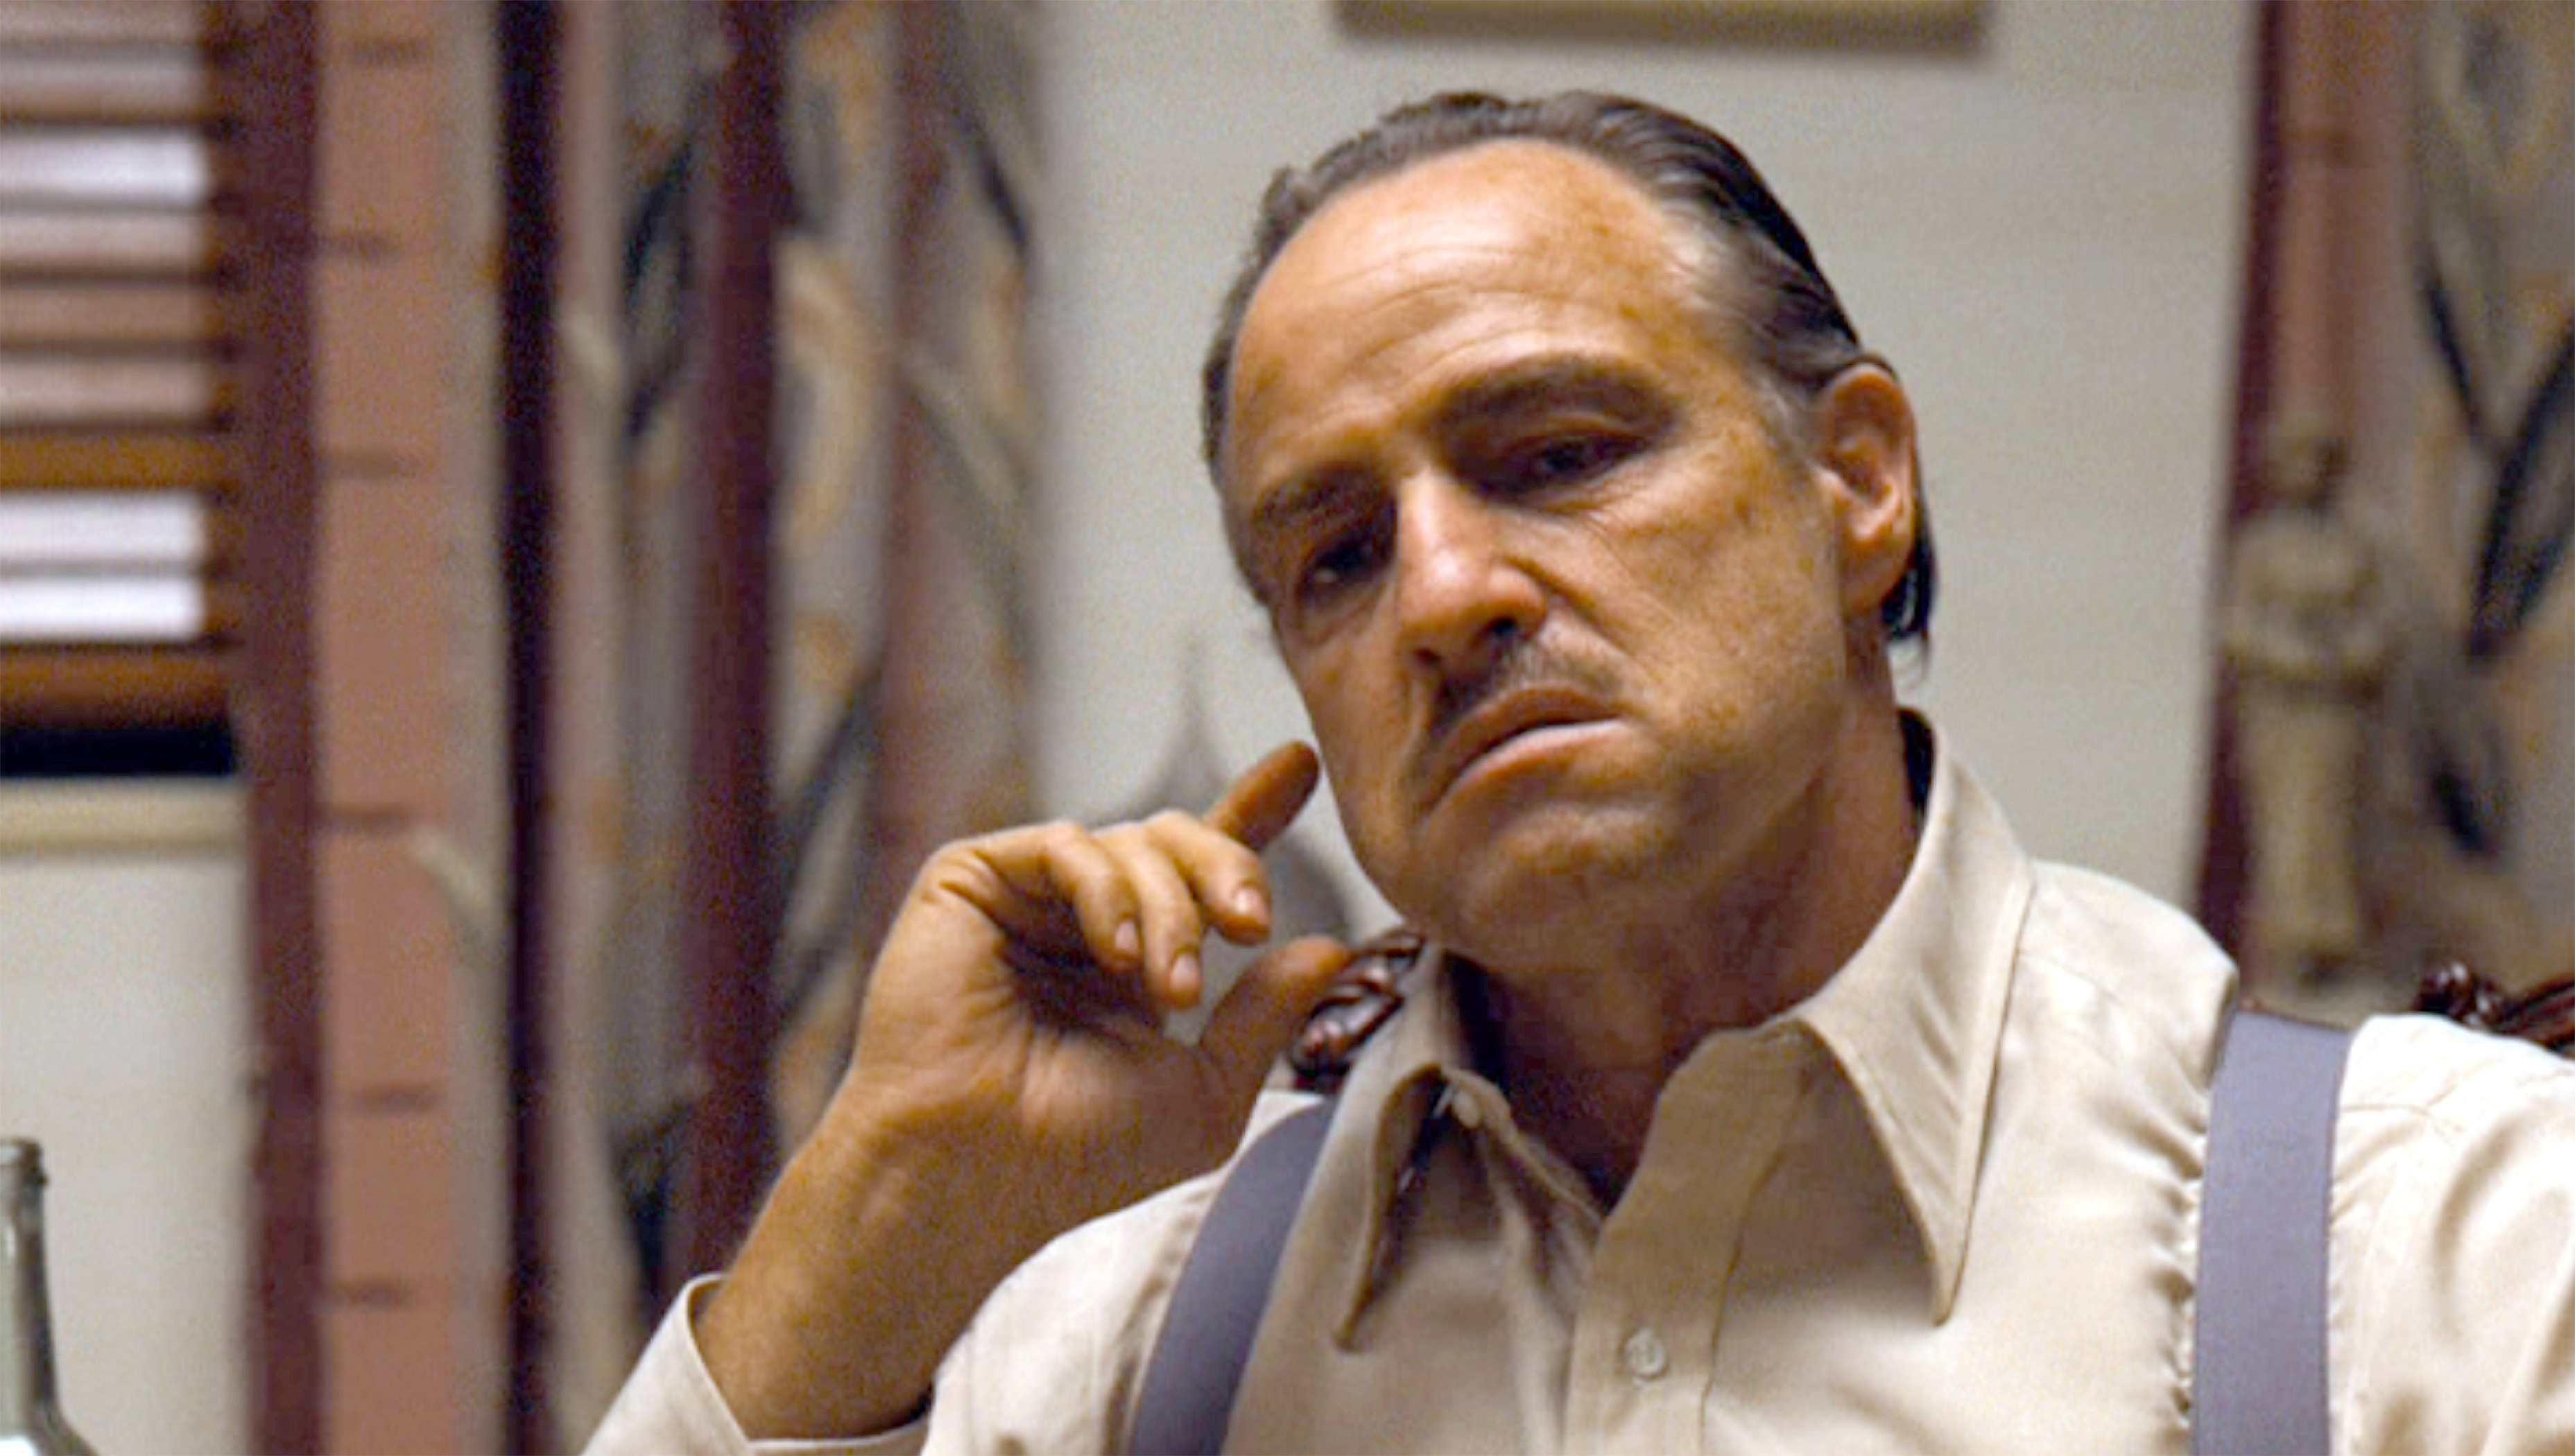 Marlon Brando als Don Corleone im klassischen Mob-Film „Der Pate“ von 1972